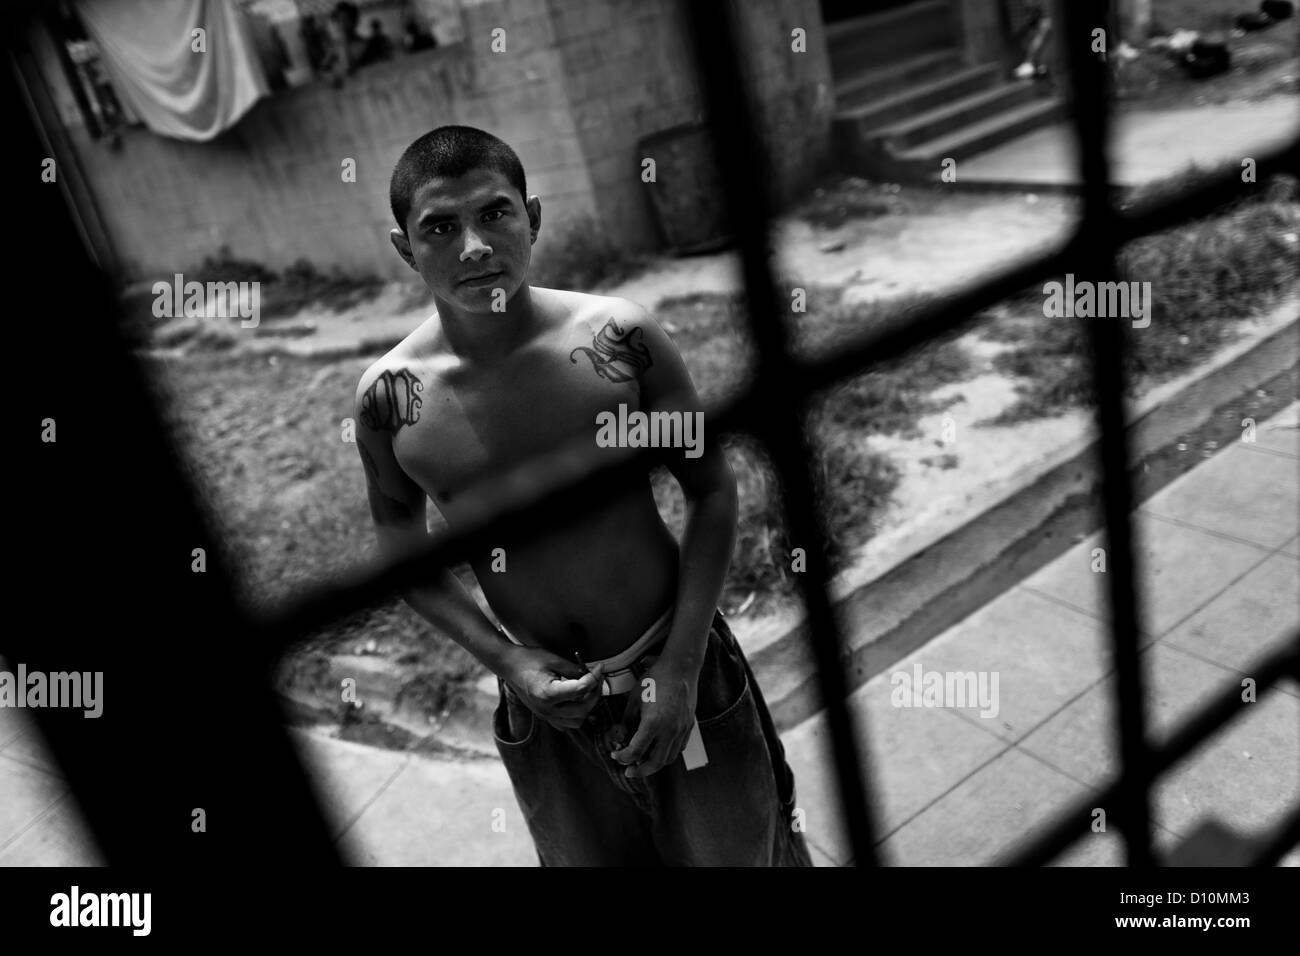 Un membro della mara salvatrucha pista (MS-13) sta dietro le sbarre nel carcere di tonacatepeque, El Salvador. Foto Stock